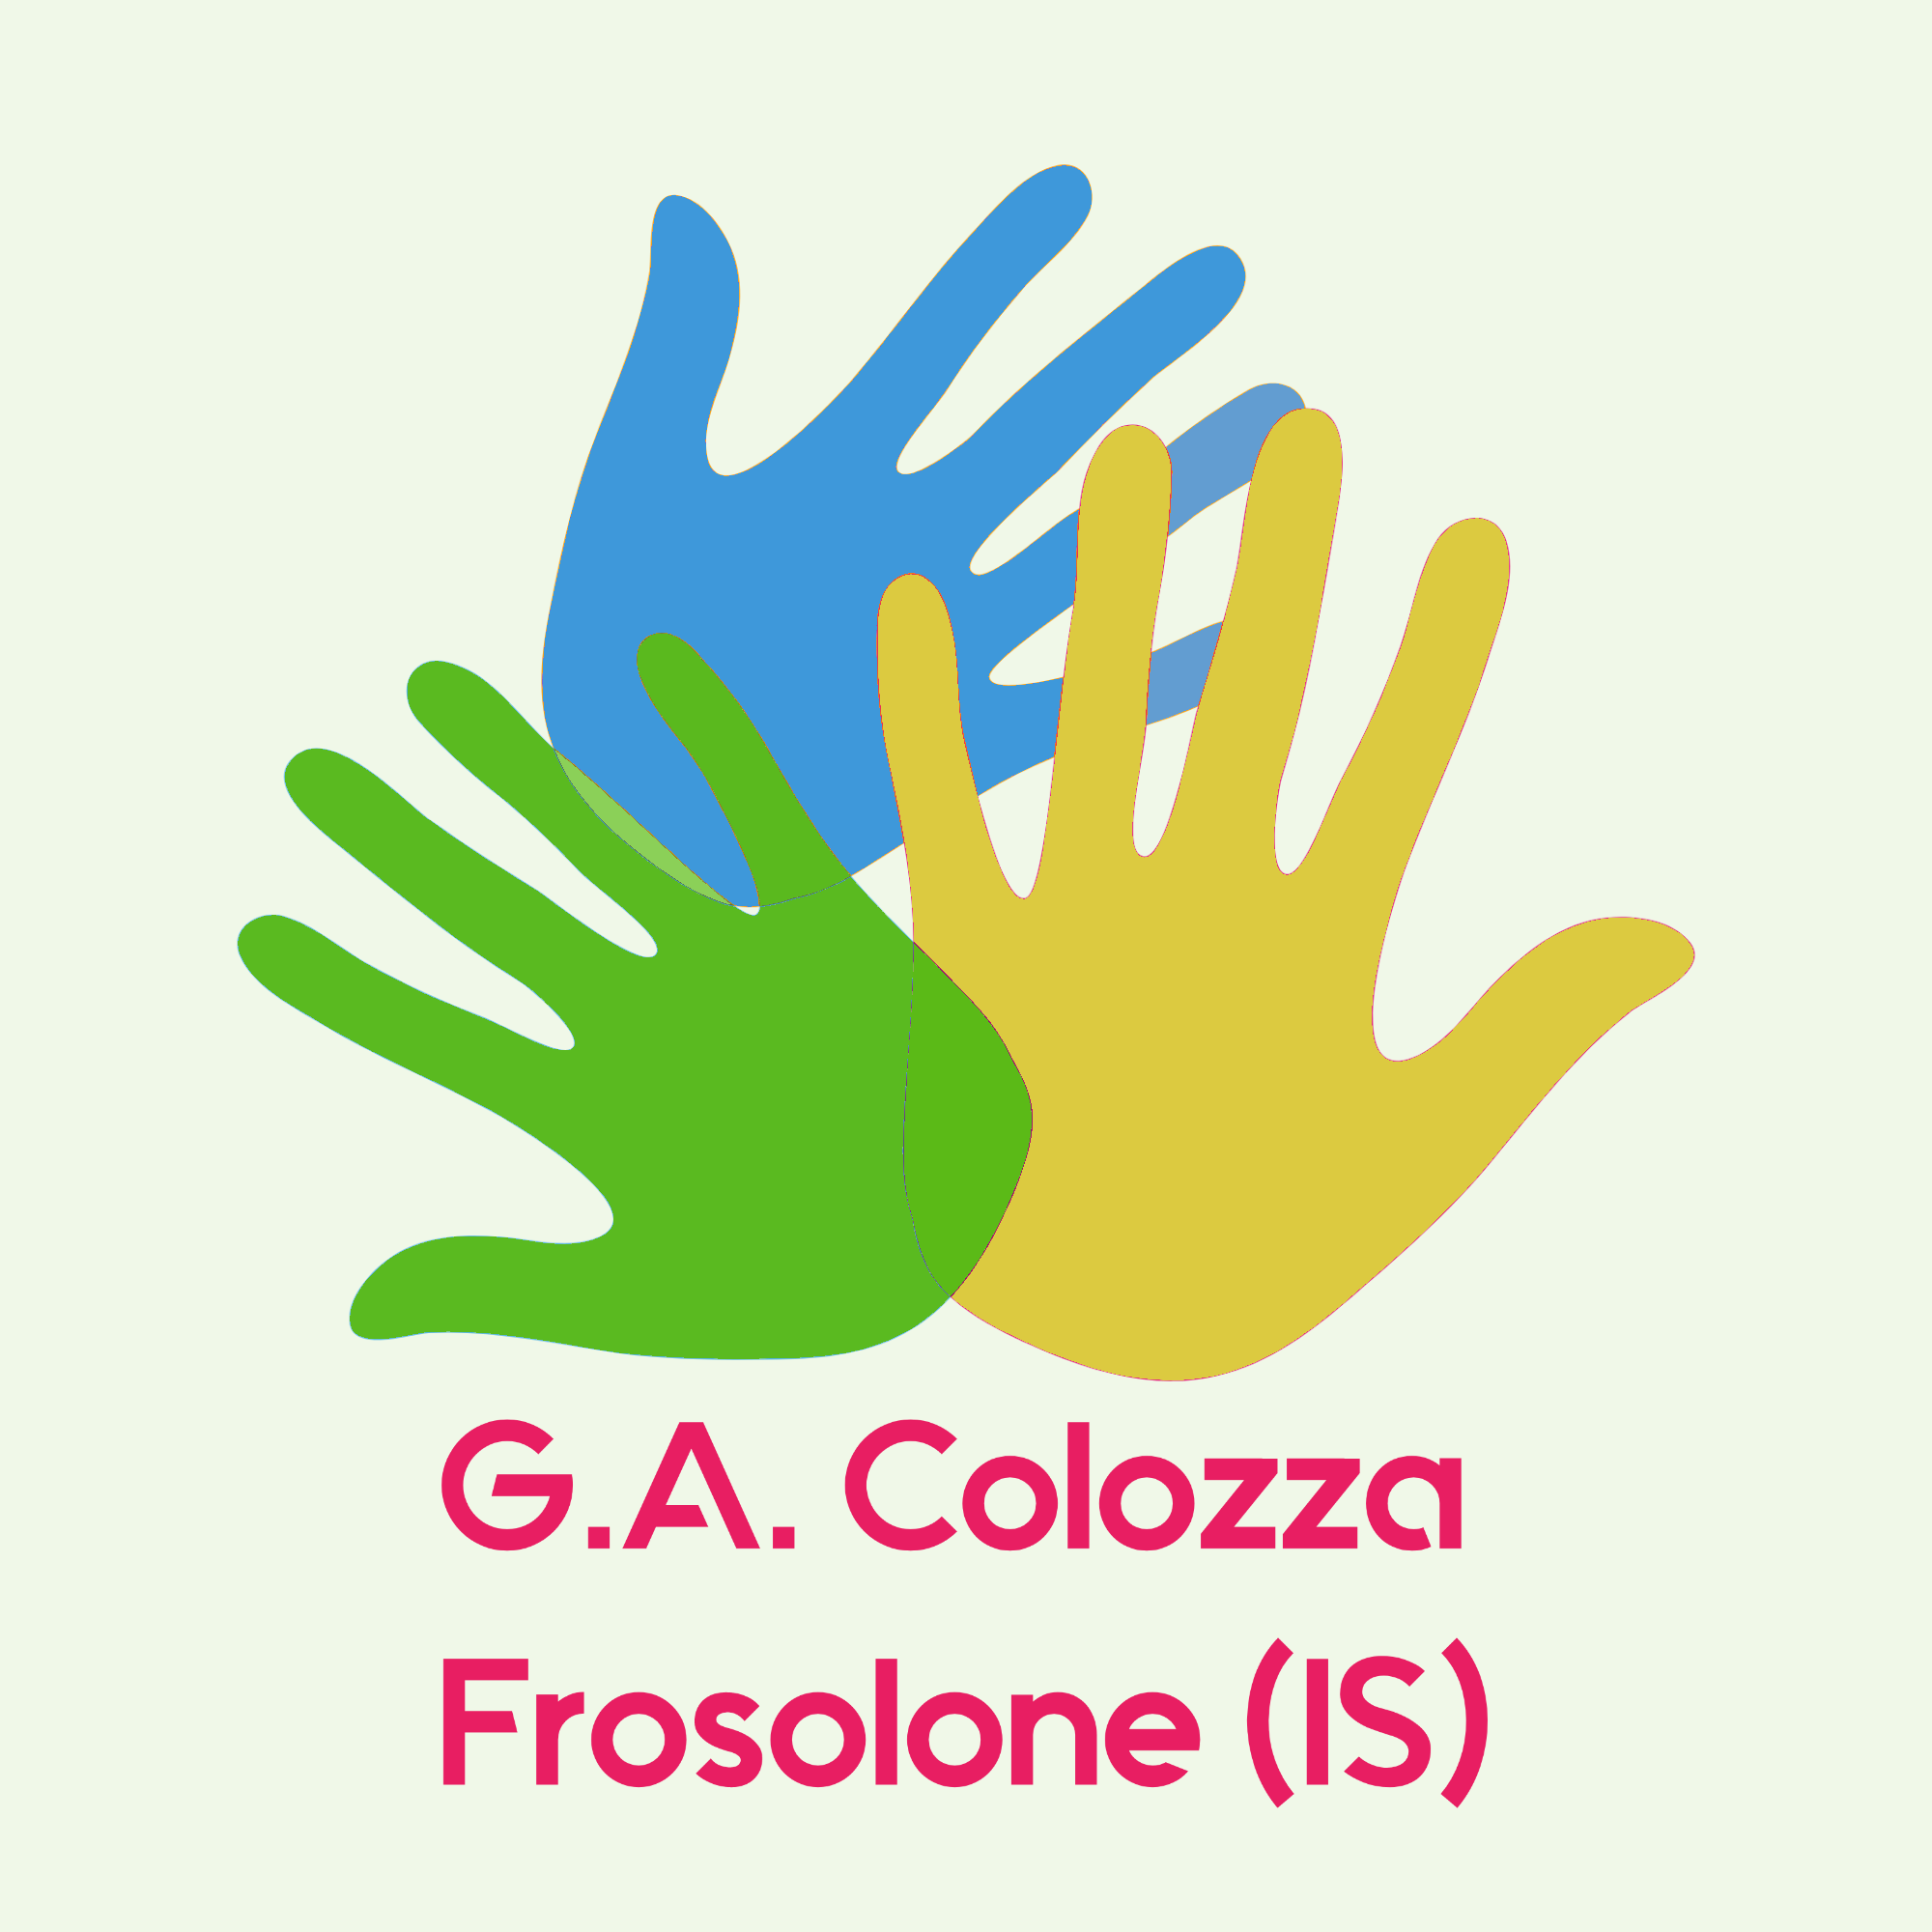 Al momento stai visualizzando Link pagina Facebook I.C. “G.A. Colozza” Frosolone